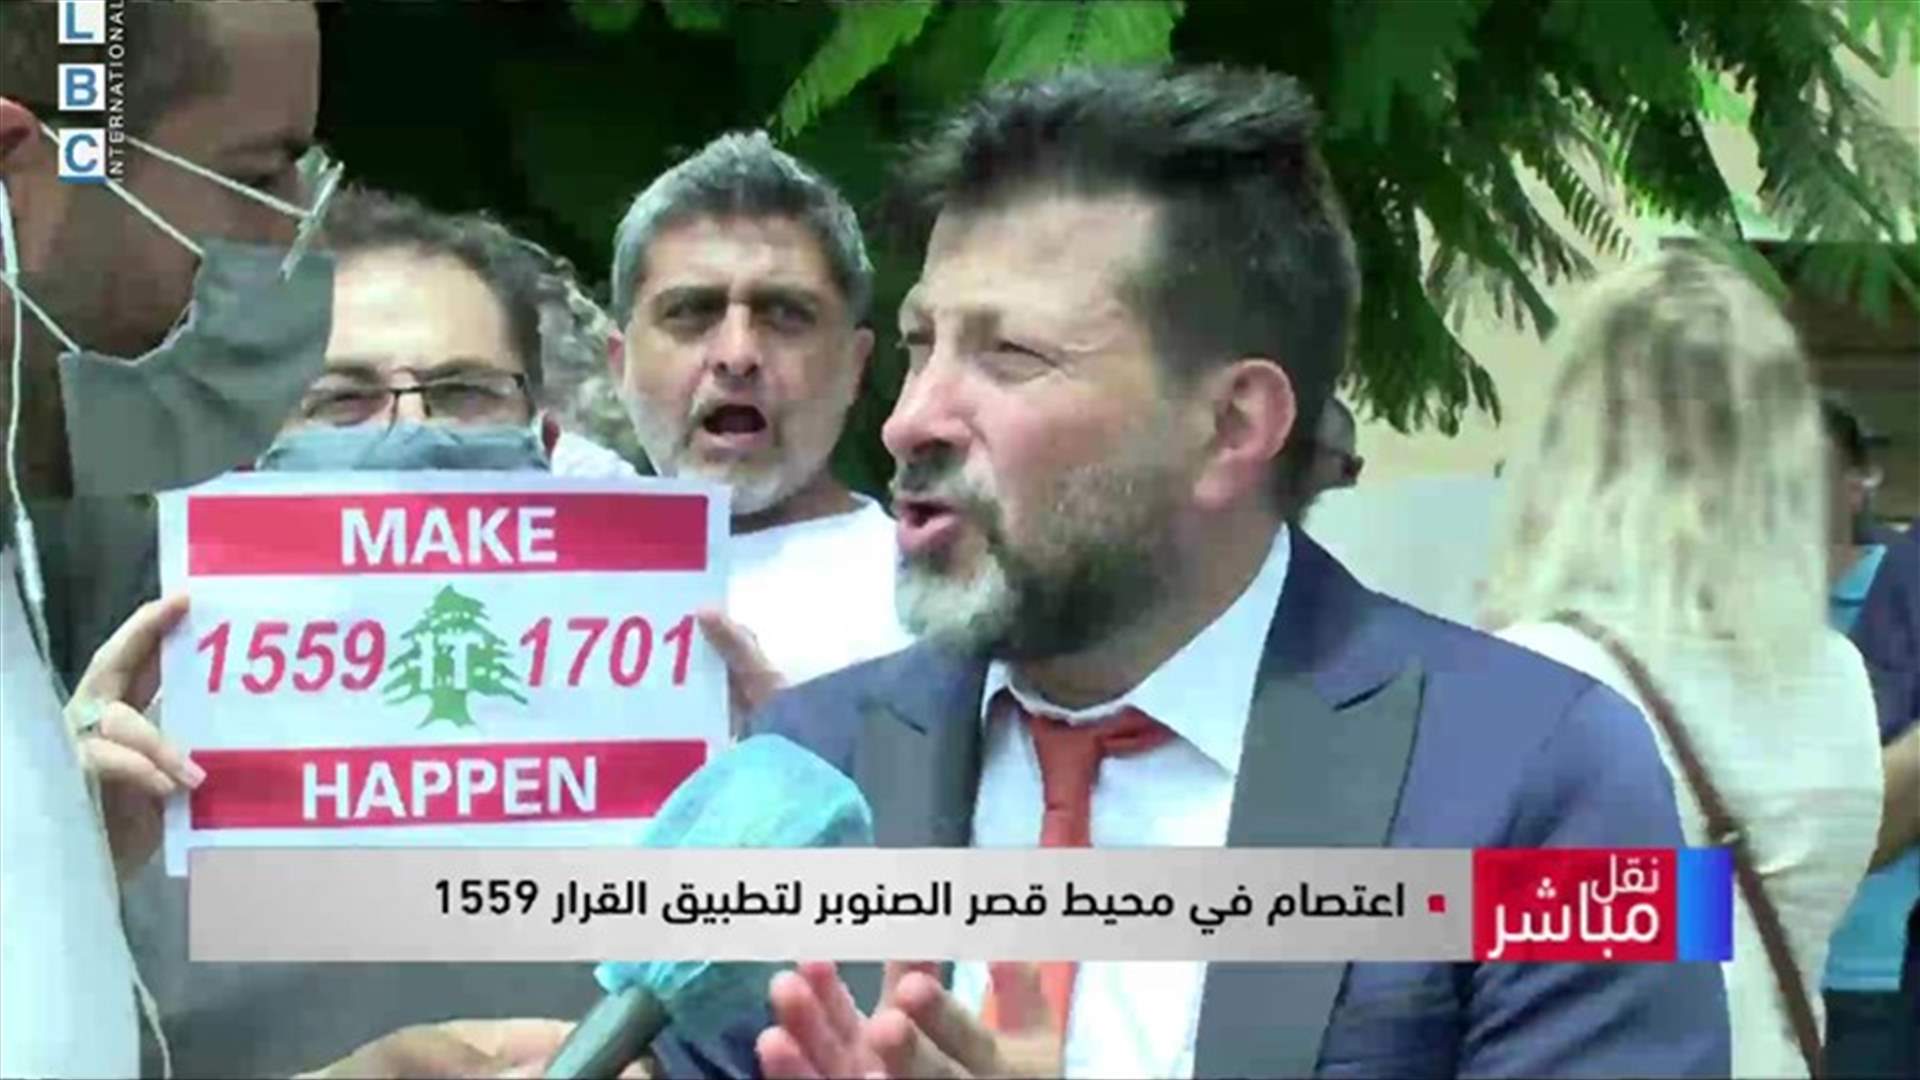 وقفة احتجاجية أمام السفارة الفرنسية للمطالبة بتنفيذ القرار 1559 (فيديو)